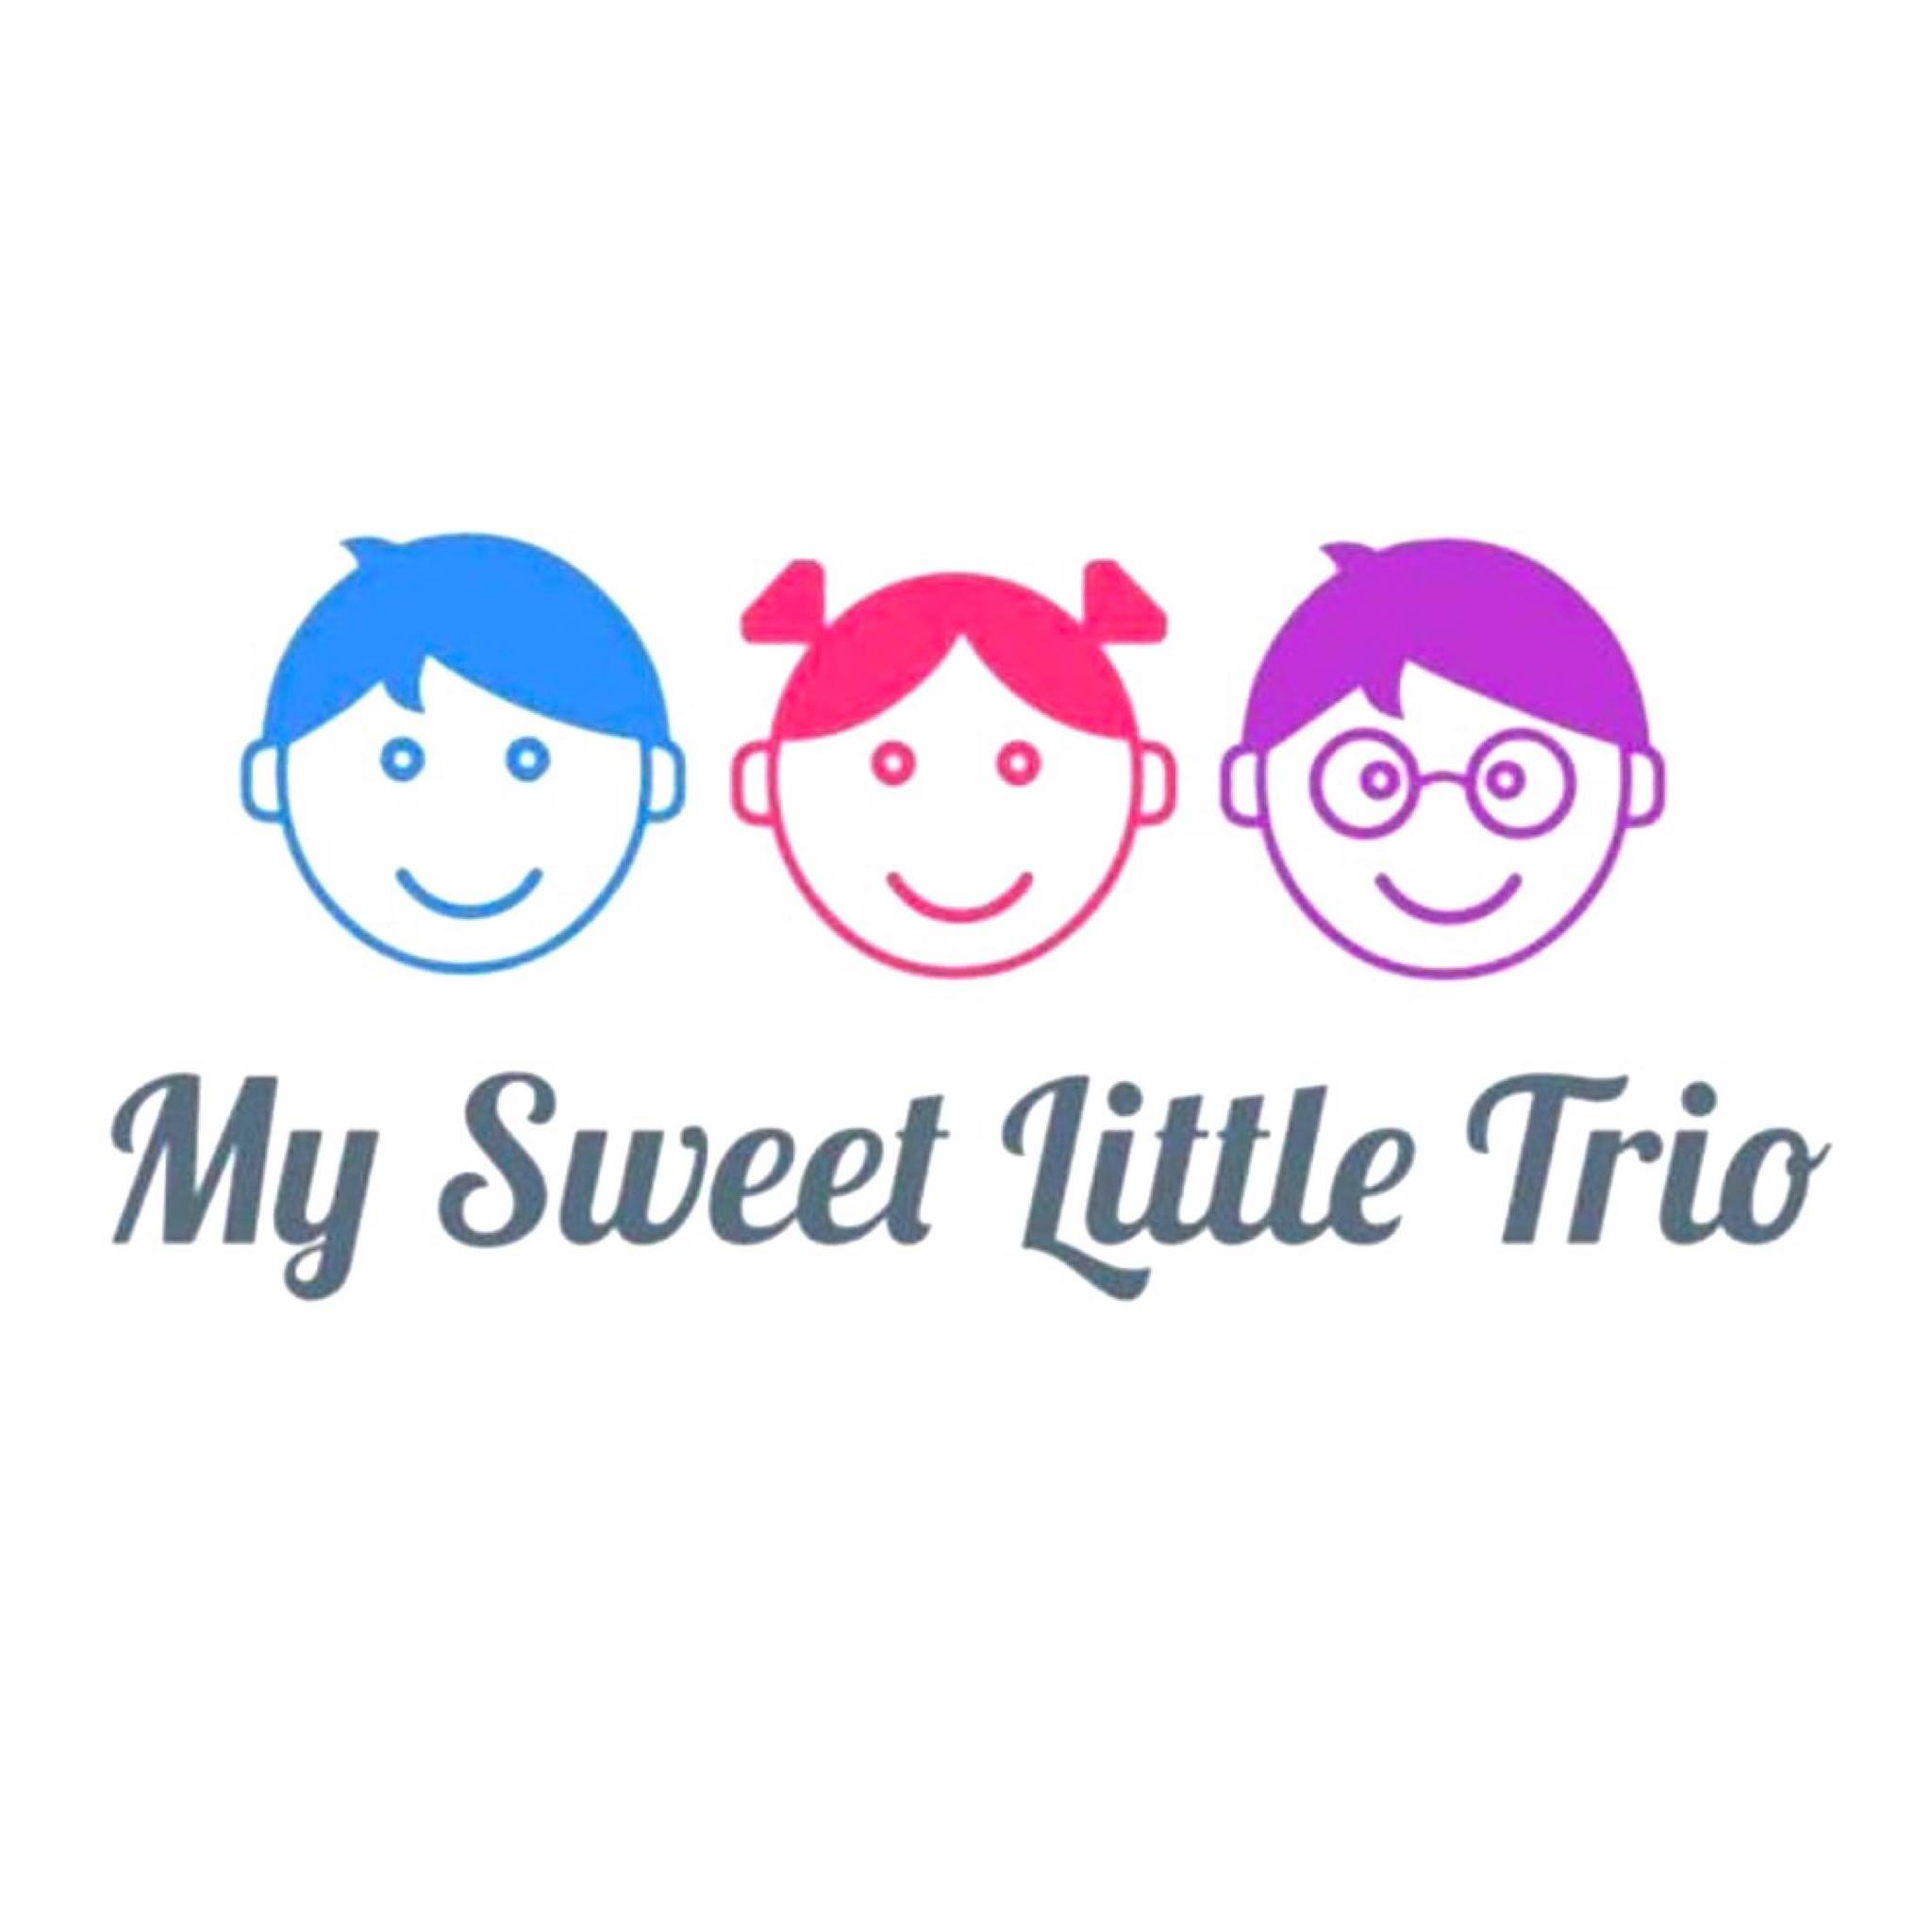 My Sweet Little Trio